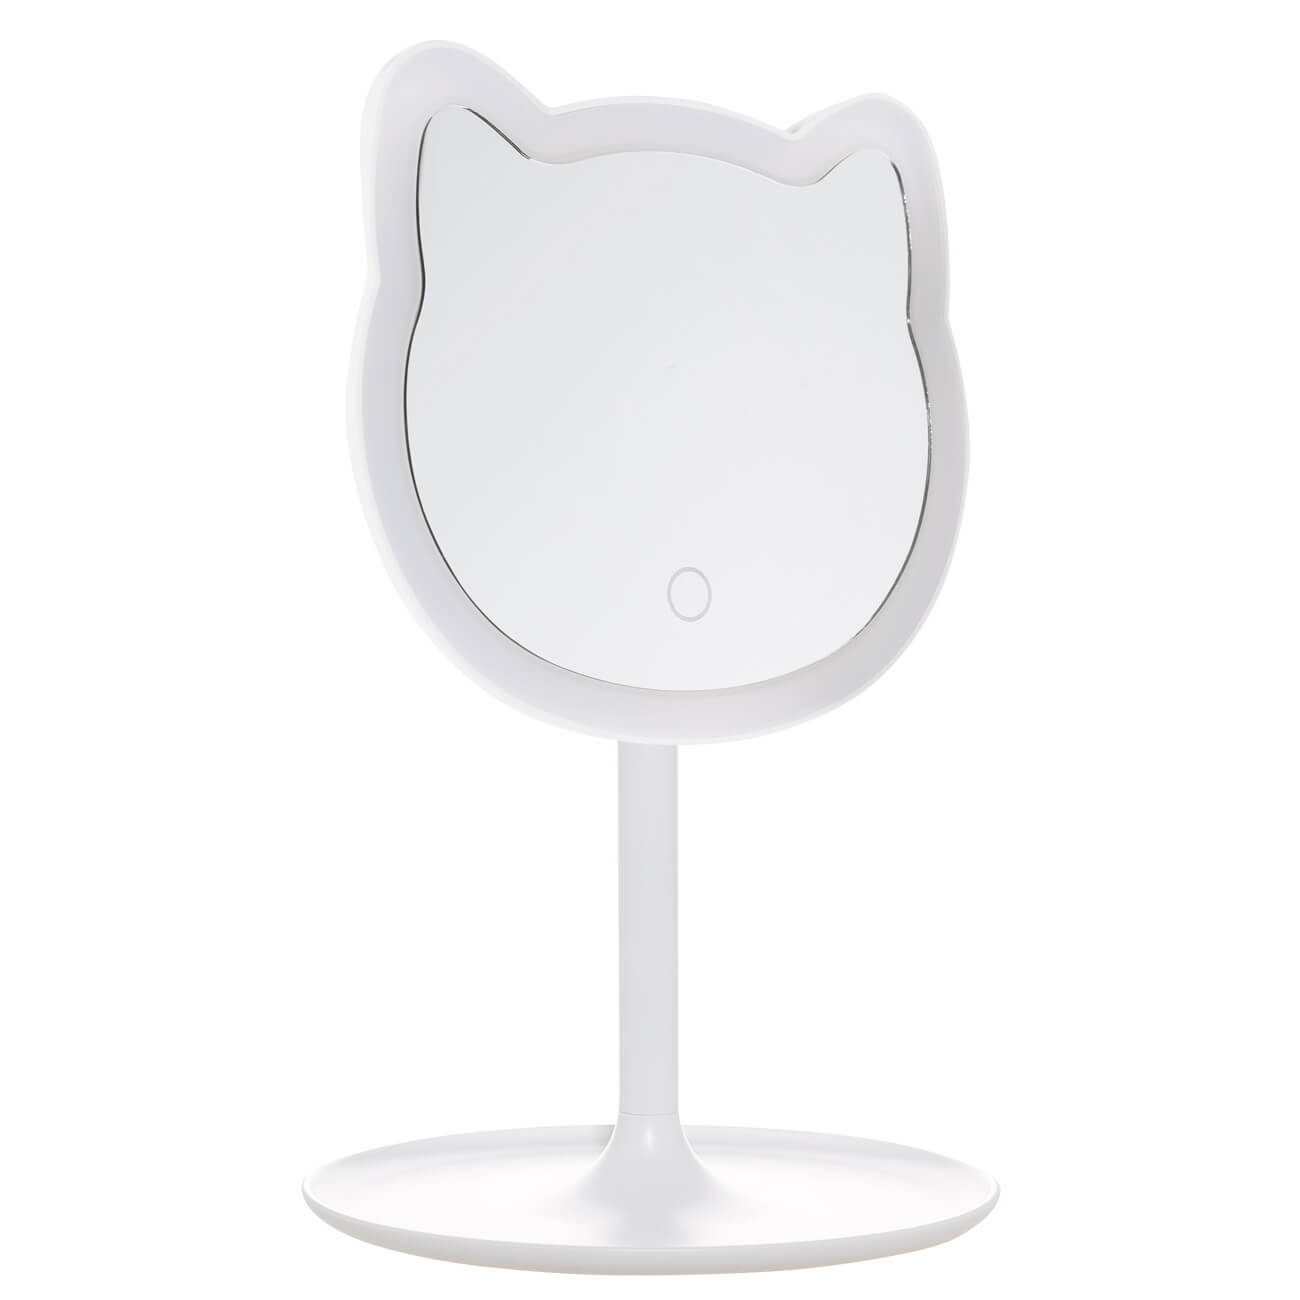 Зеркало настольное, 29 см, с подсветкой, на подставке, пластик, белое, Кот, Cat изображение № 1